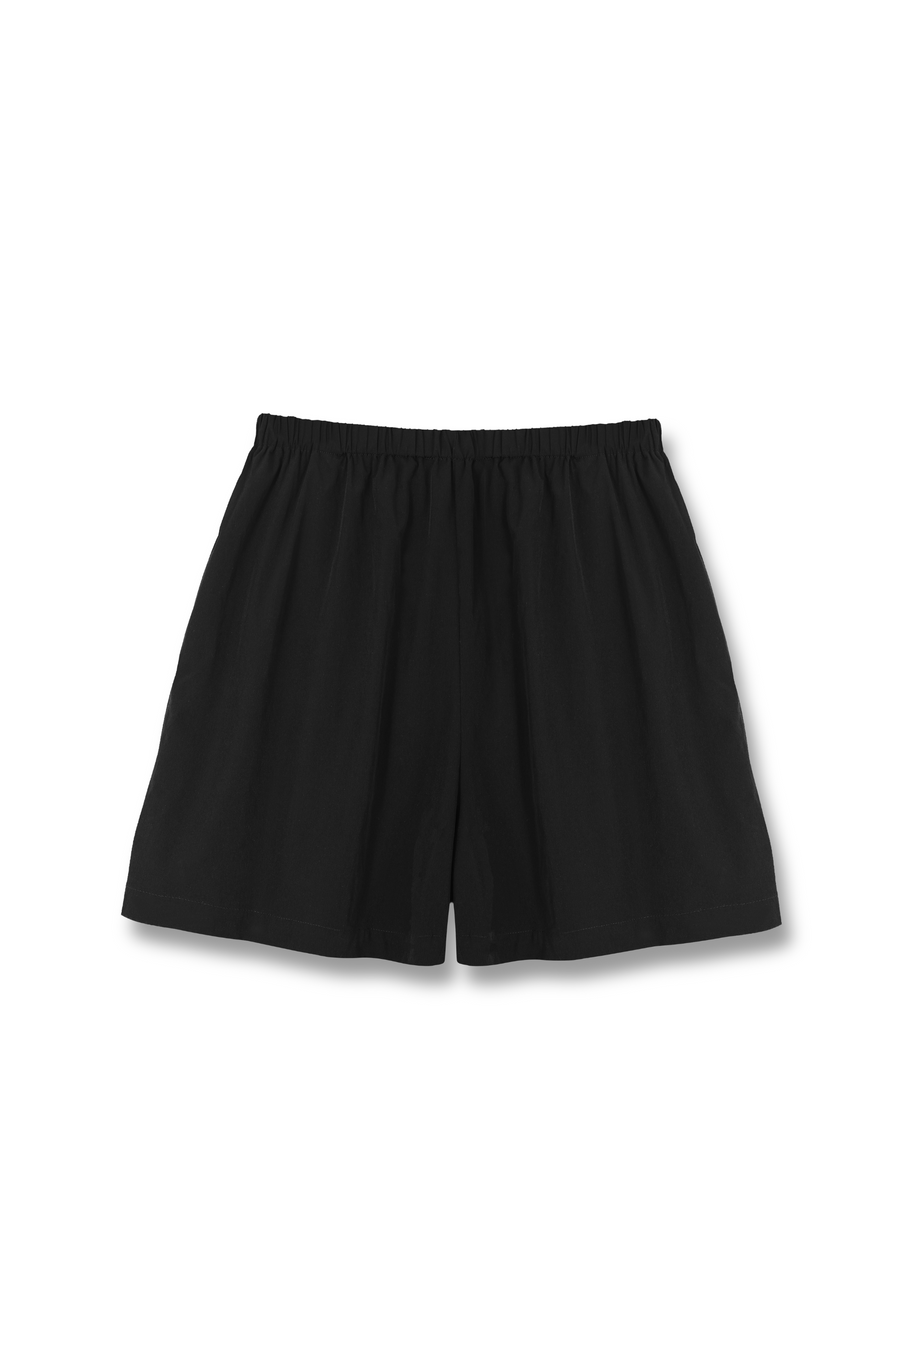 MINDY Nylon Shorts